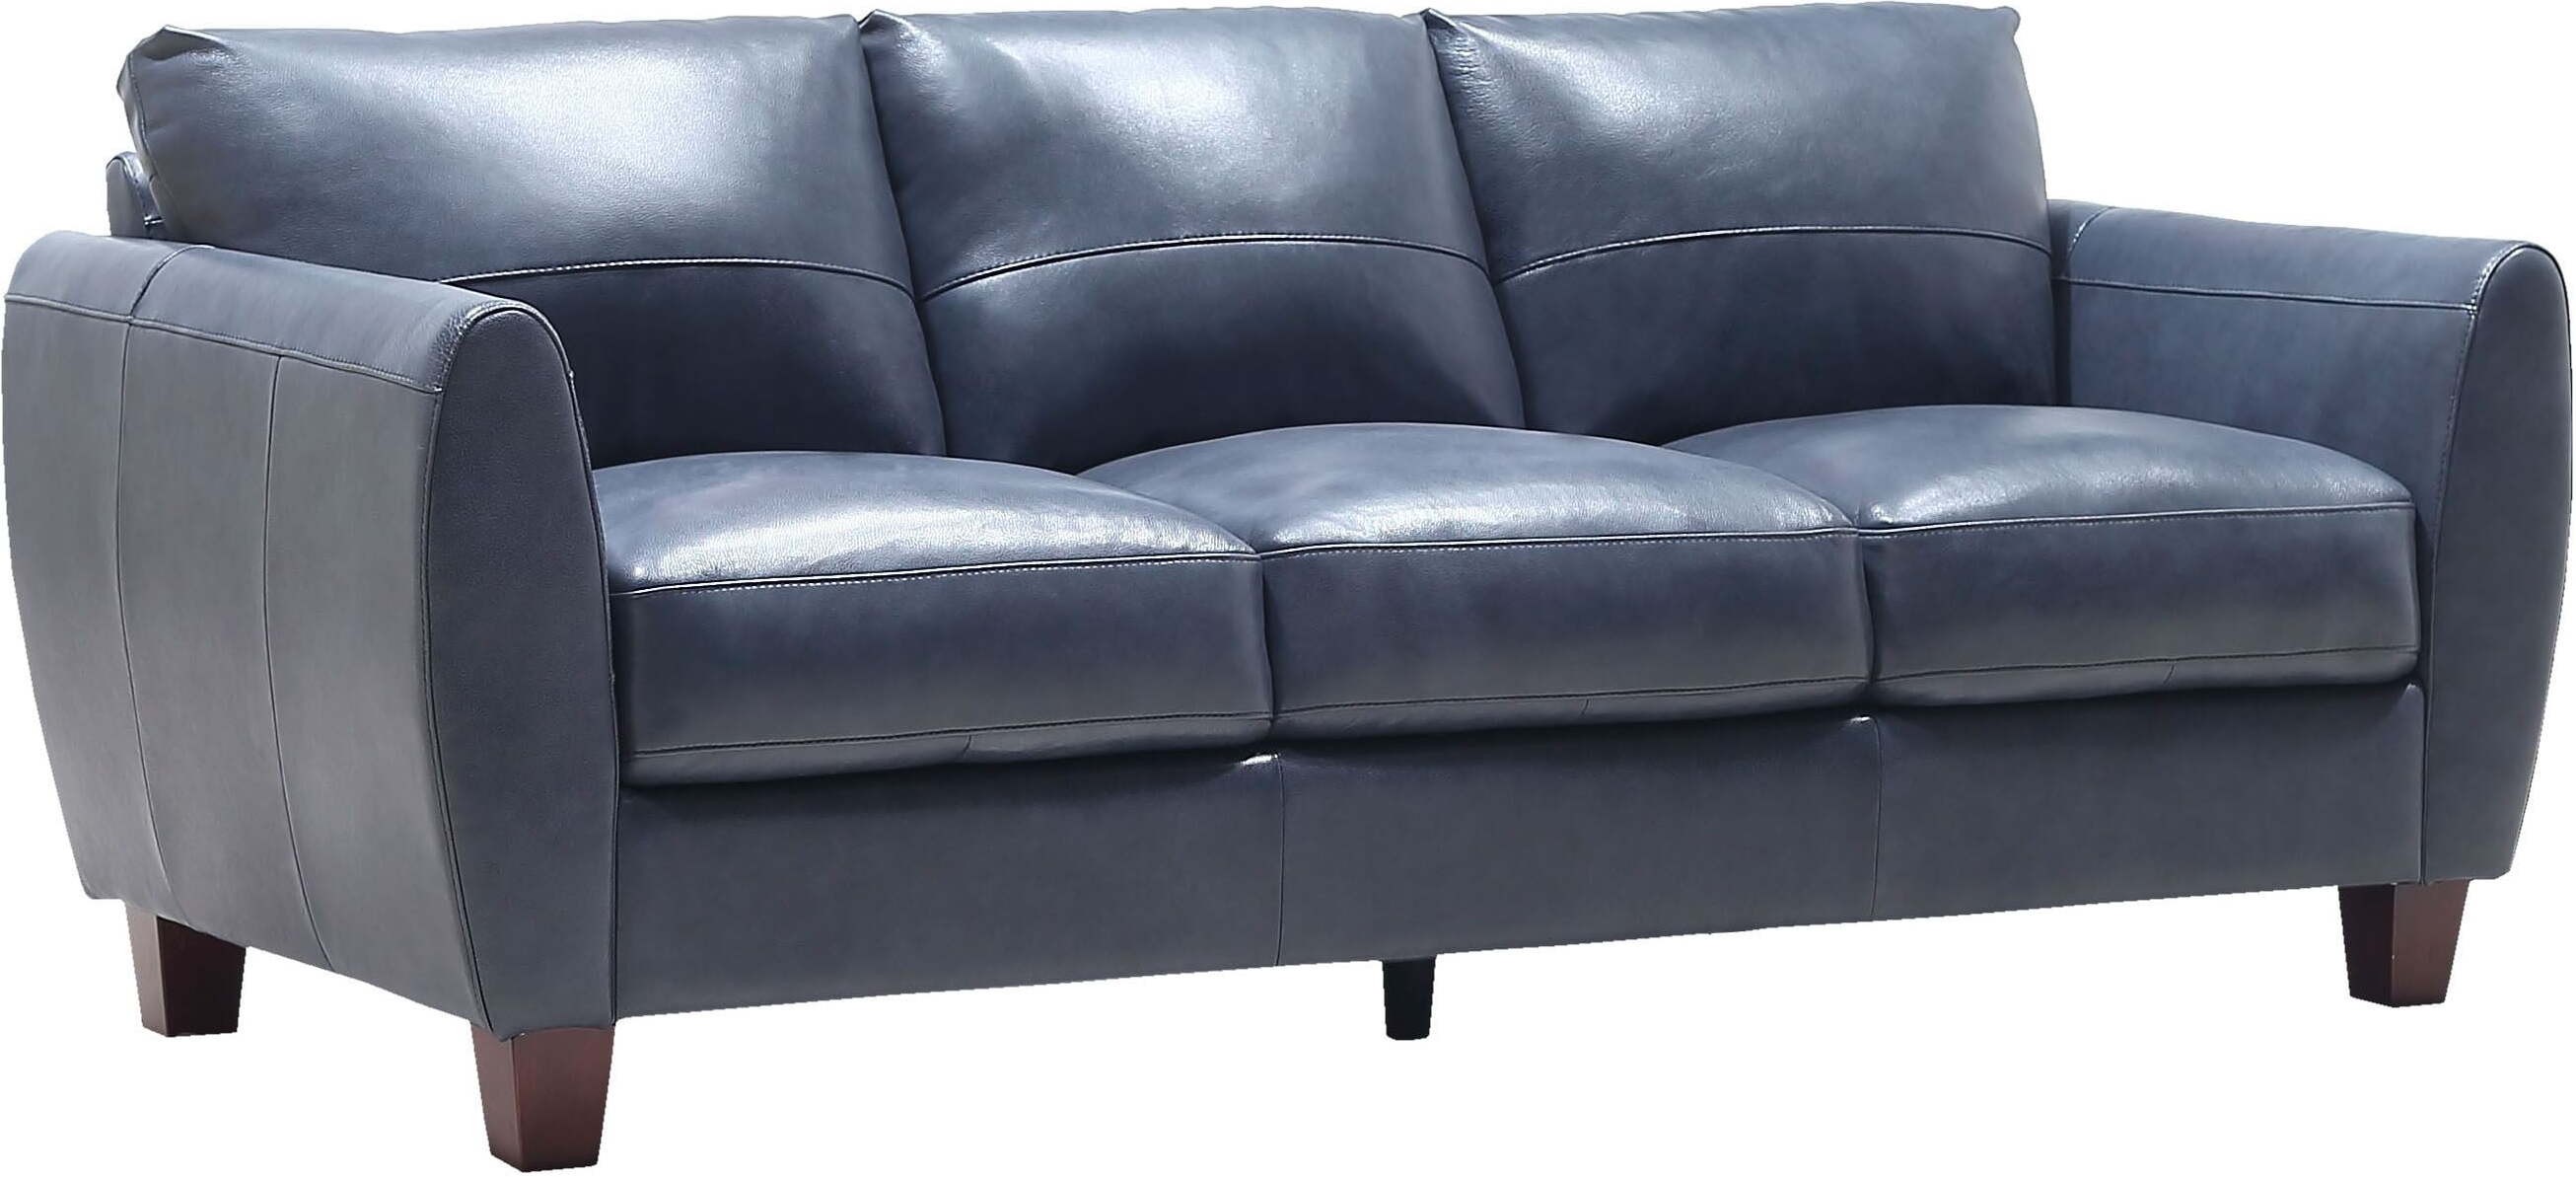 blue leather sofa canada